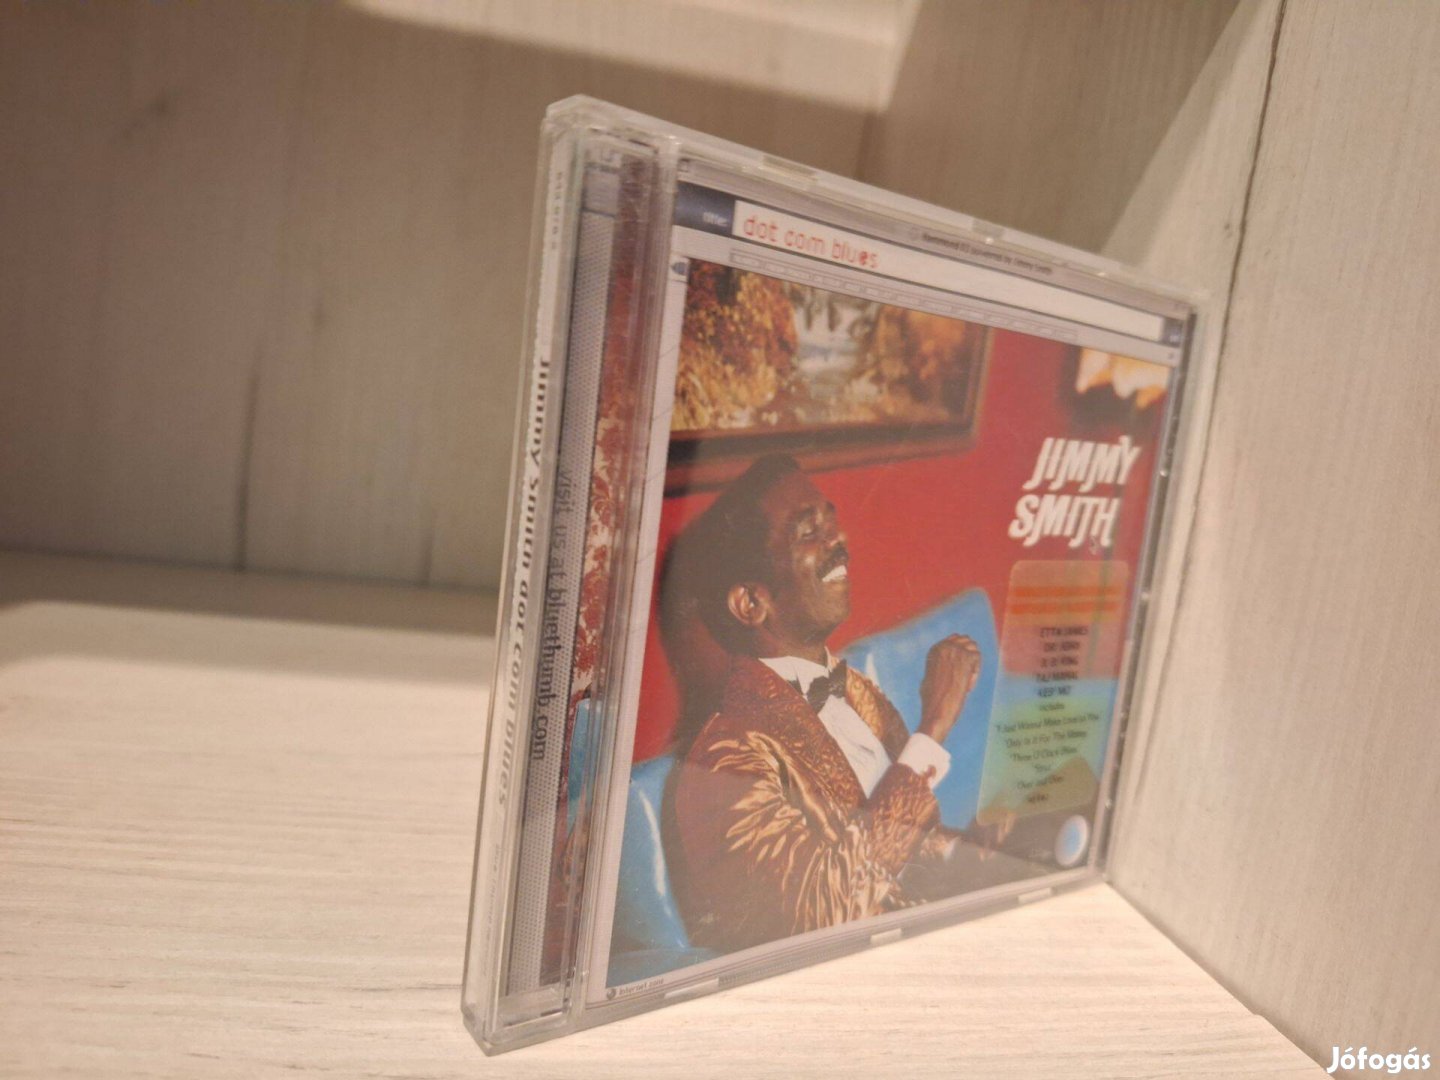 Jimmy Smith - Dot Com Blues CD